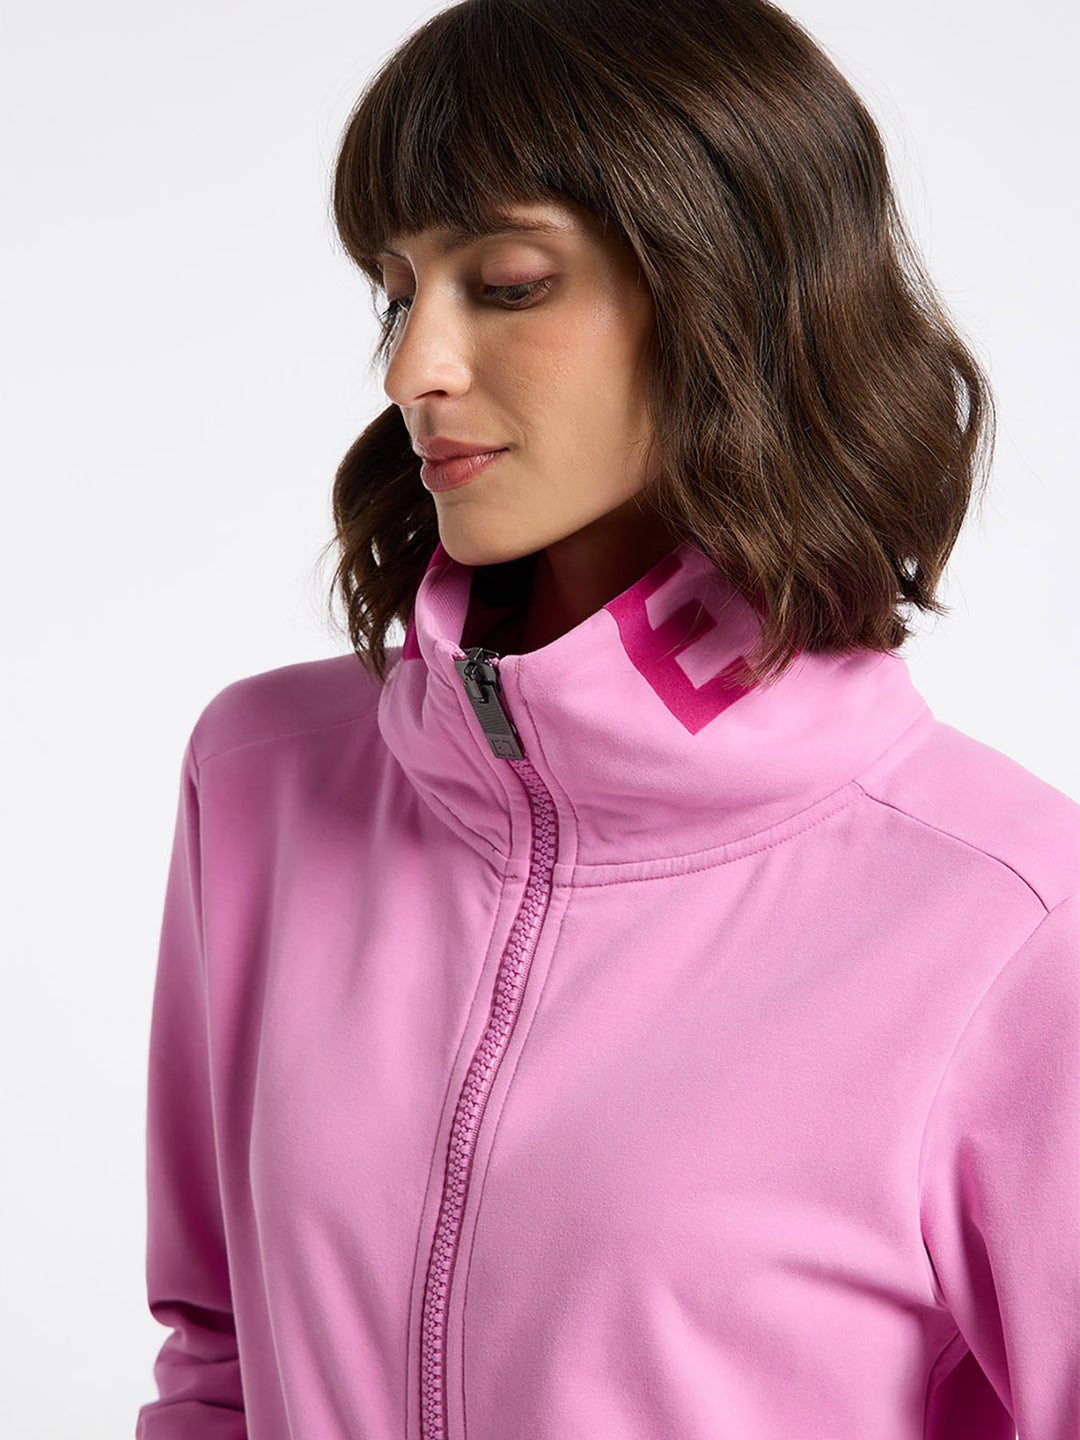 Elbsand Sweatjacke Alvis Pink Mauve erhältlich bei Modafein – Modafein  Fashion